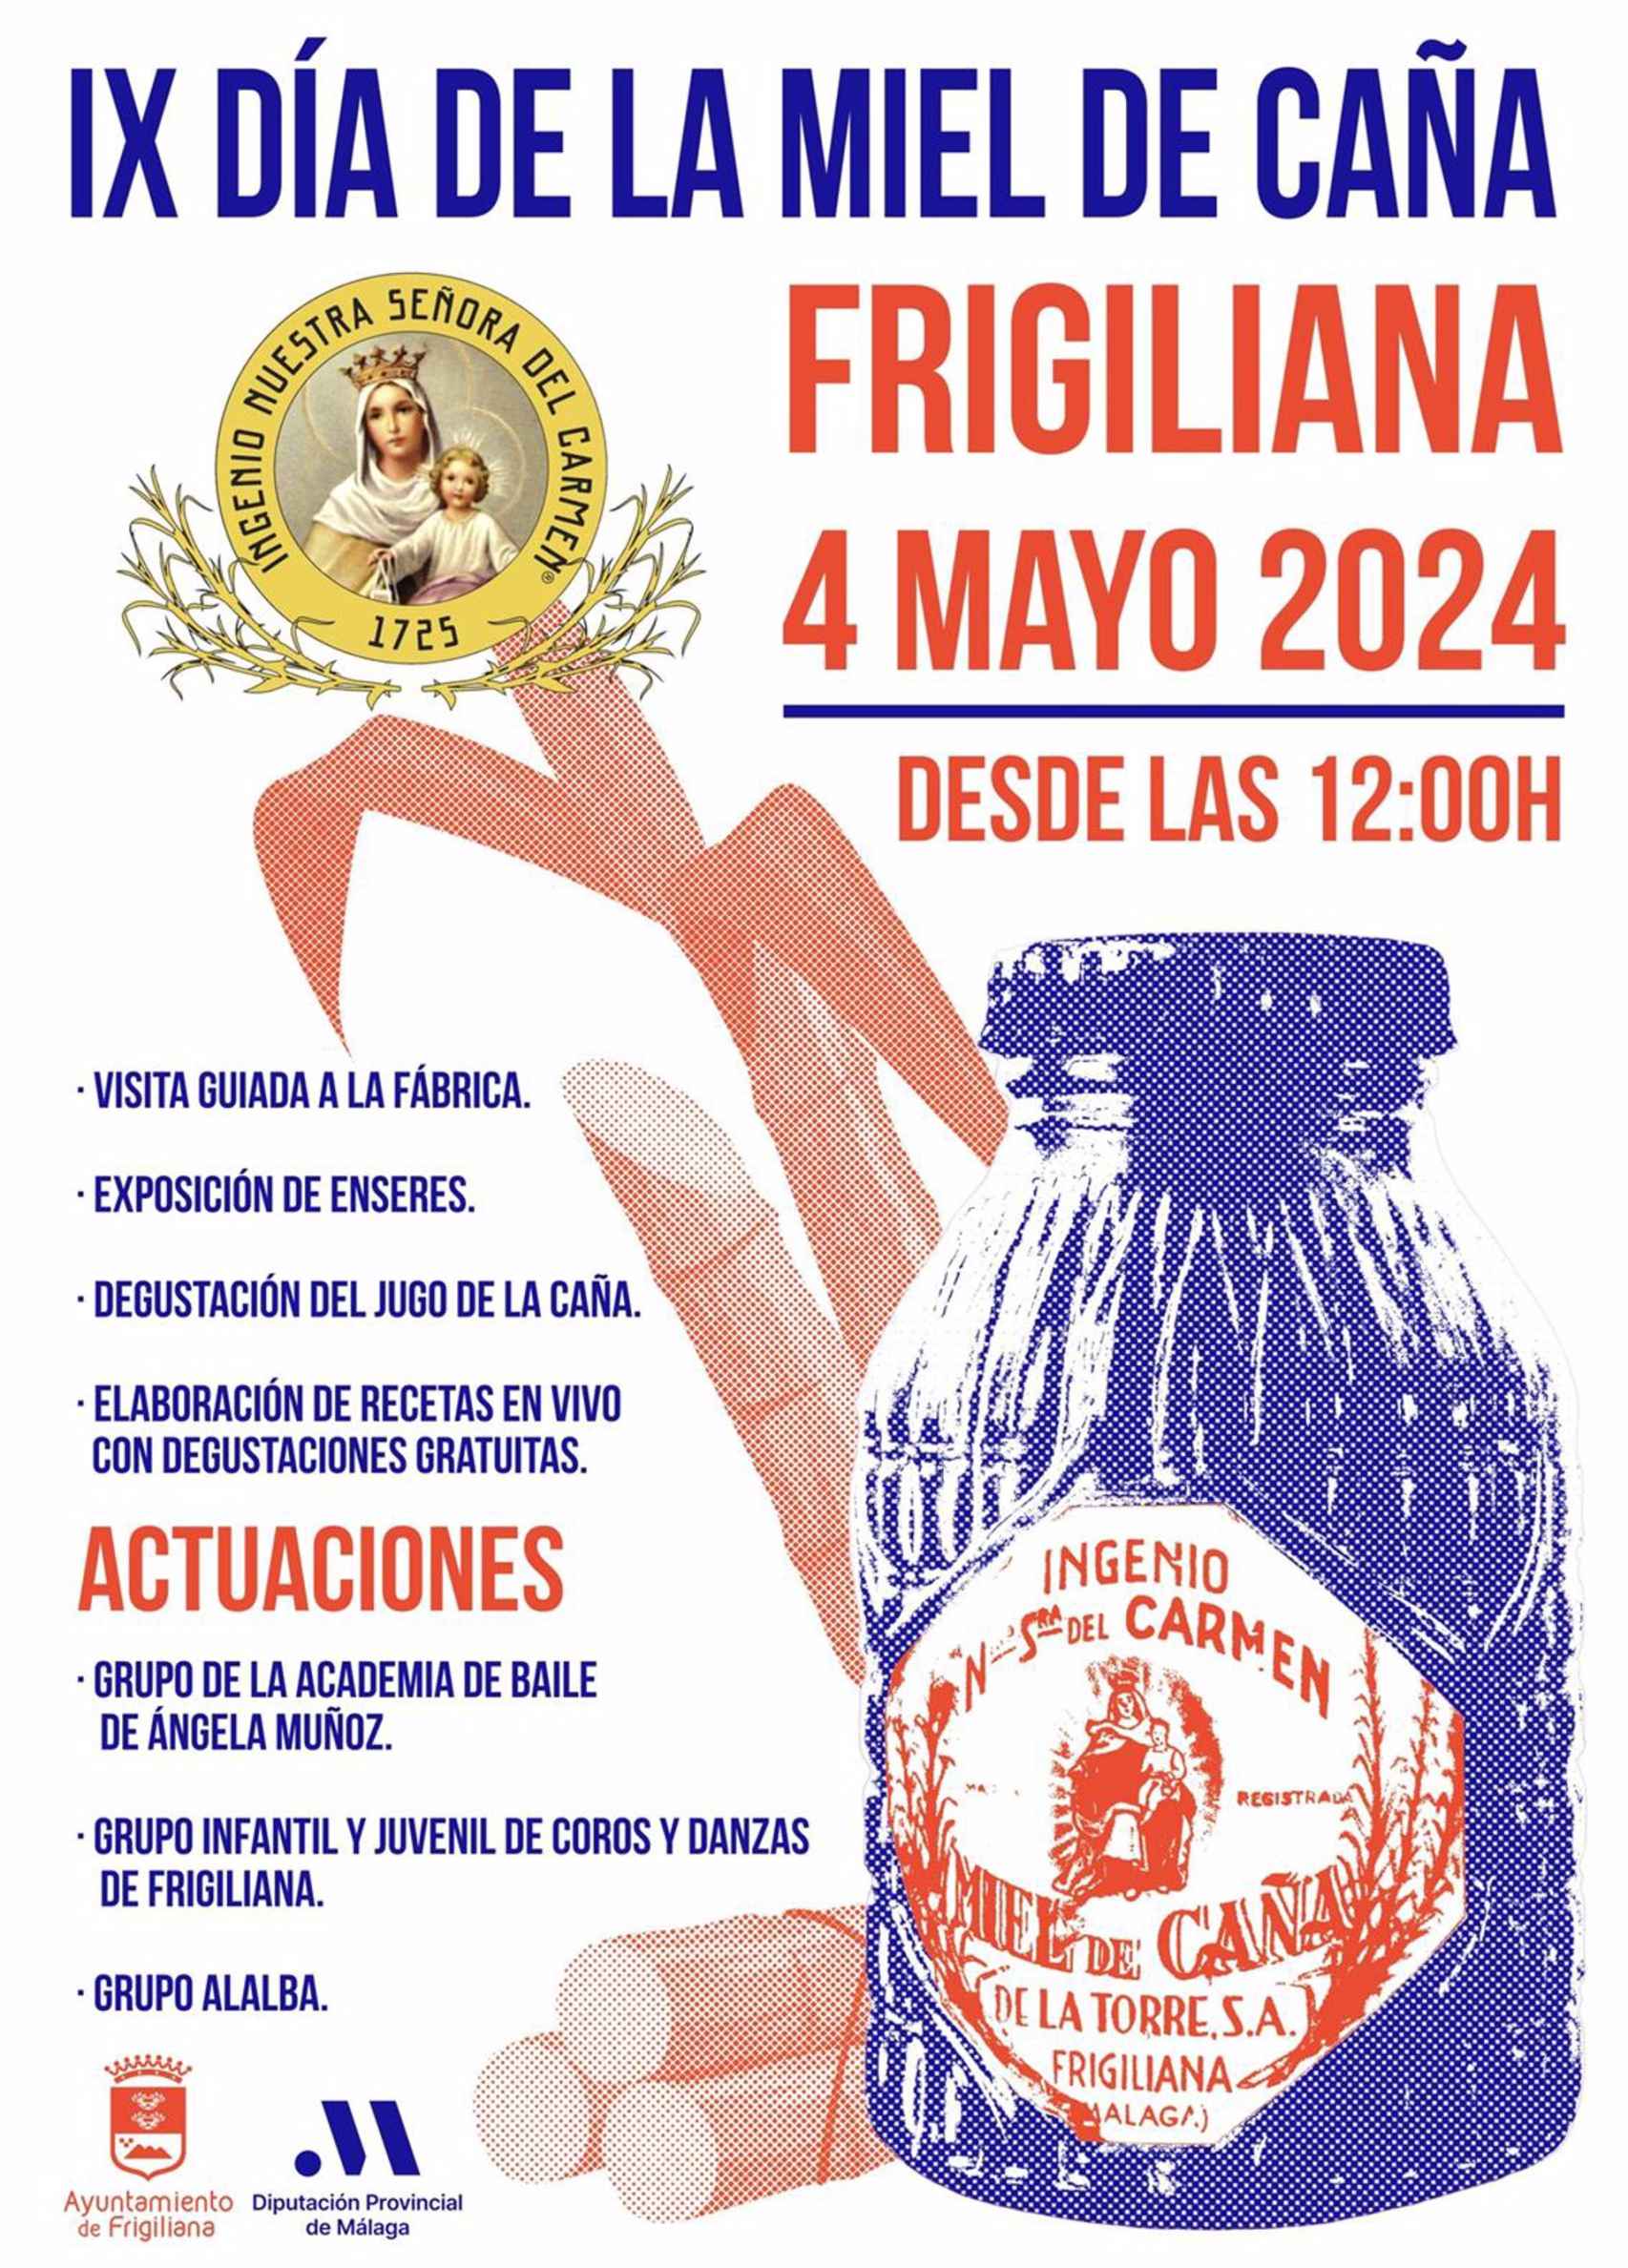 Anuncio de la celebración del Día de la Miel de Caña en Frigiliana.